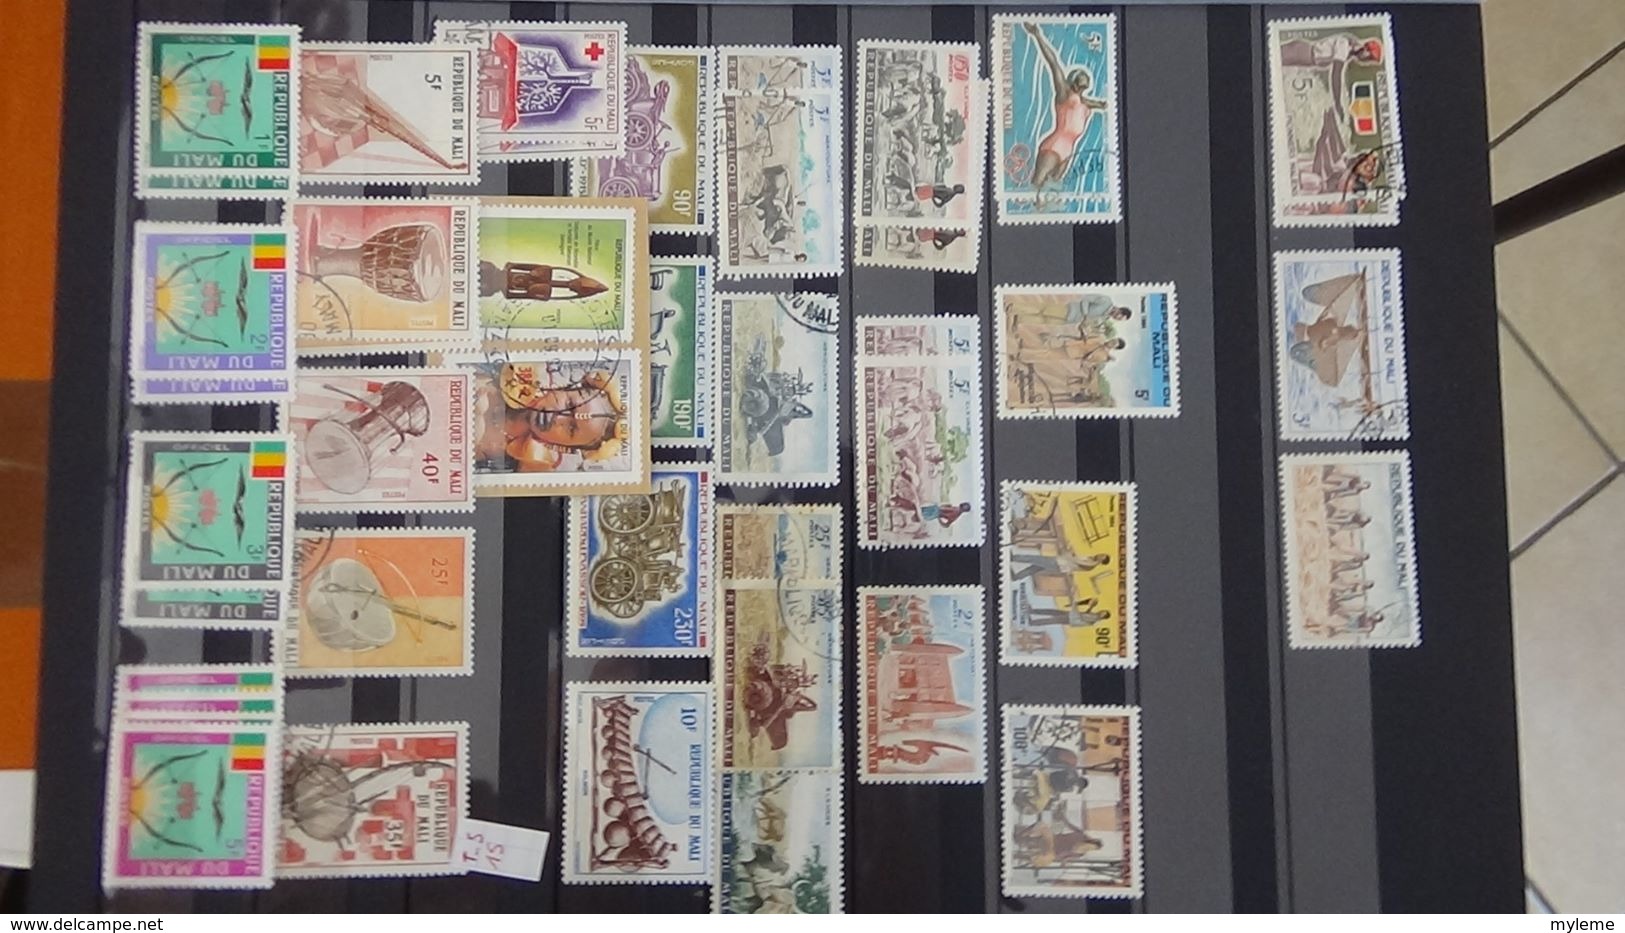 D91 Collection de timbres oblitérés de différents pays d'Afrique.  A saisir !!!